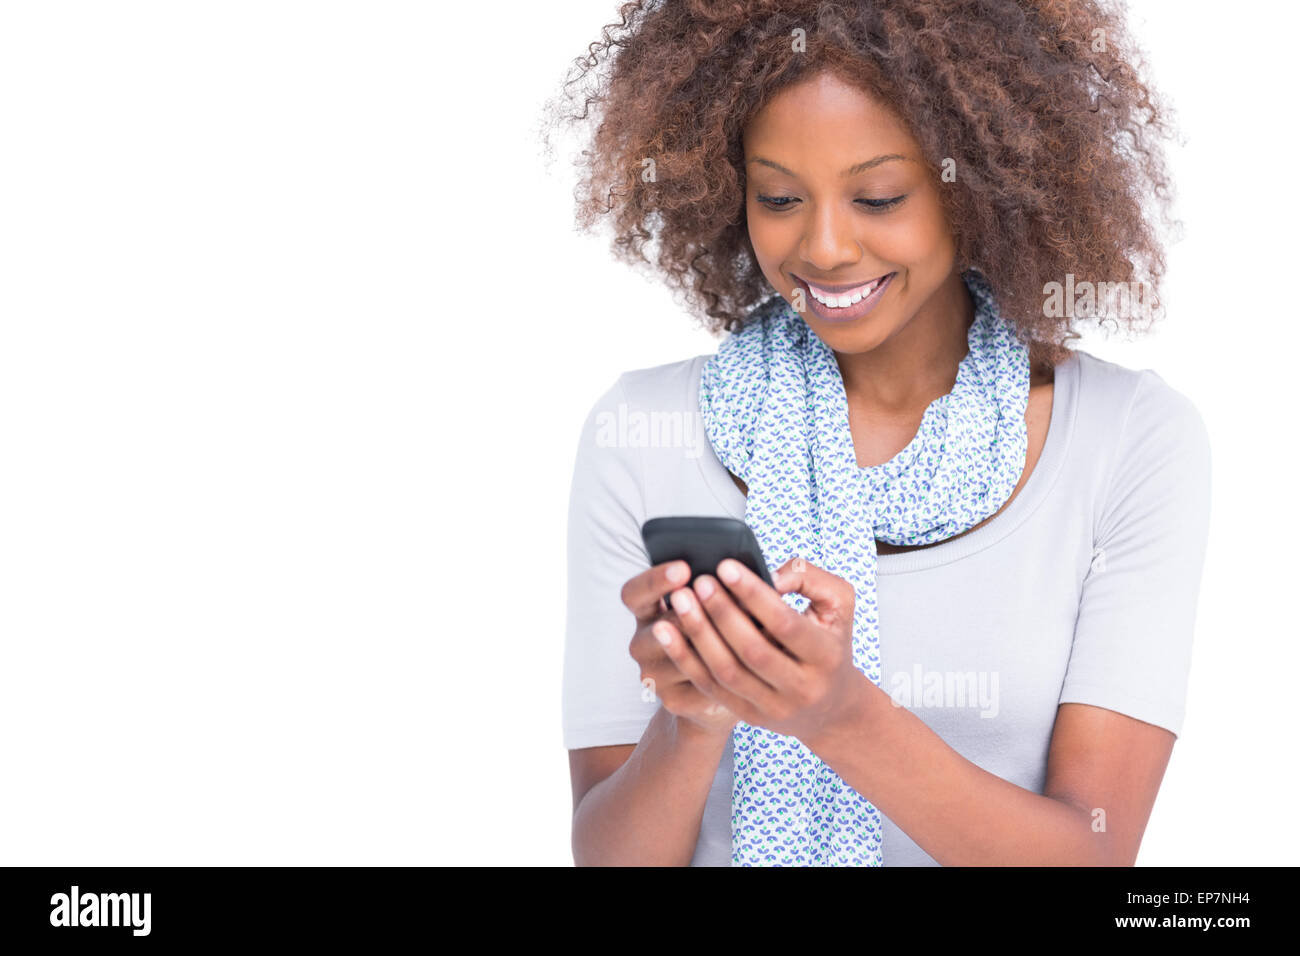 Cheerful woman de la saisie d'un message texte sur son smartphone Banque D'Images